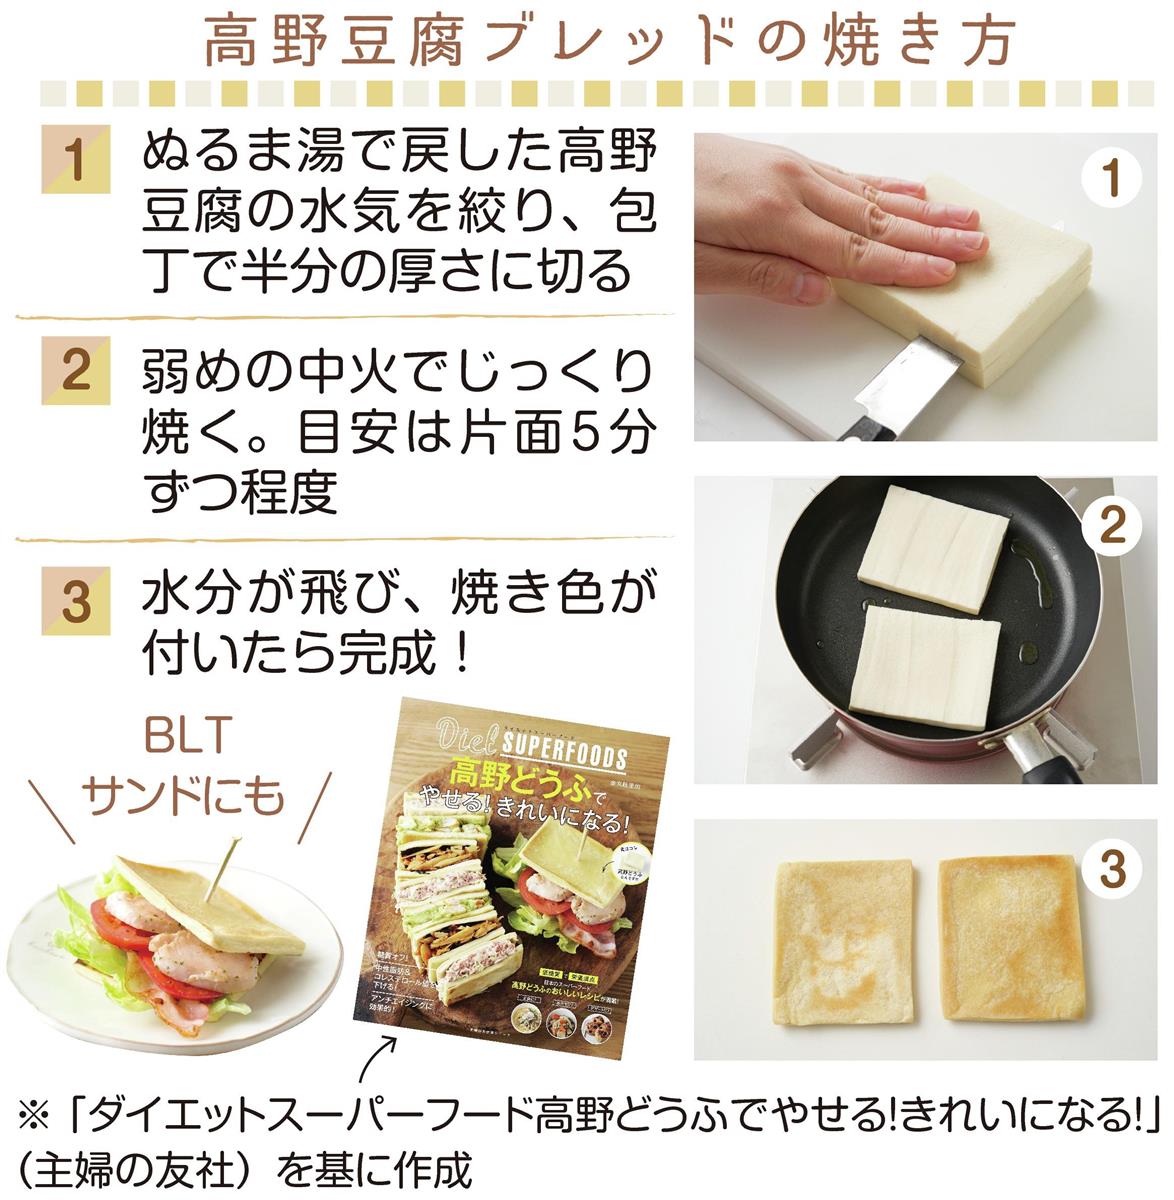 使いこなせばいいことだらけ「高野豆腐」 達人のおいしい食べ方（1/2ページ） - 産経ニュース